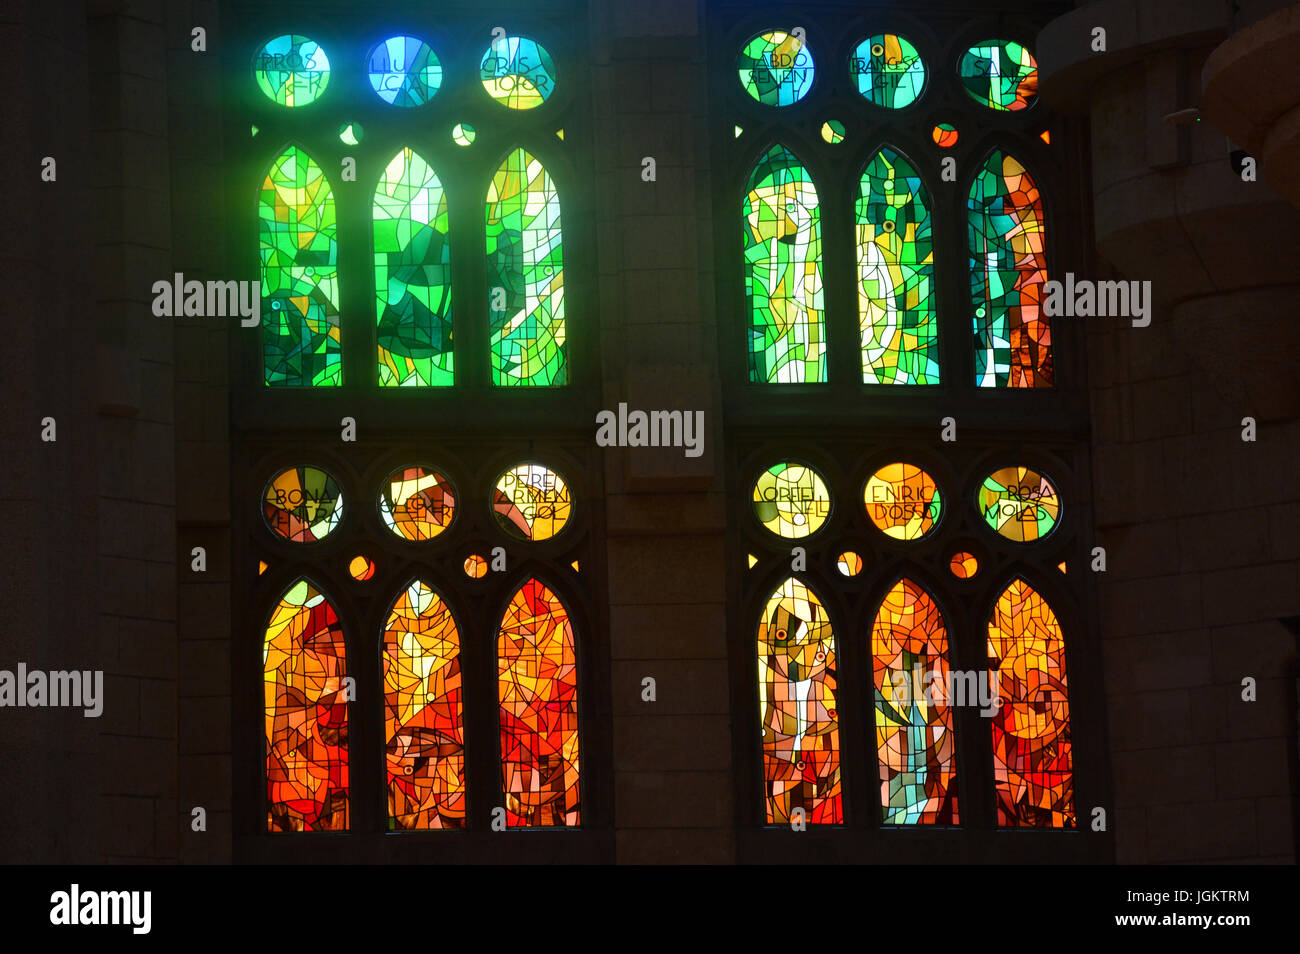 interior of Segrada Familia cathedral, Barcelona, Catalonia, Spain Stock Photo